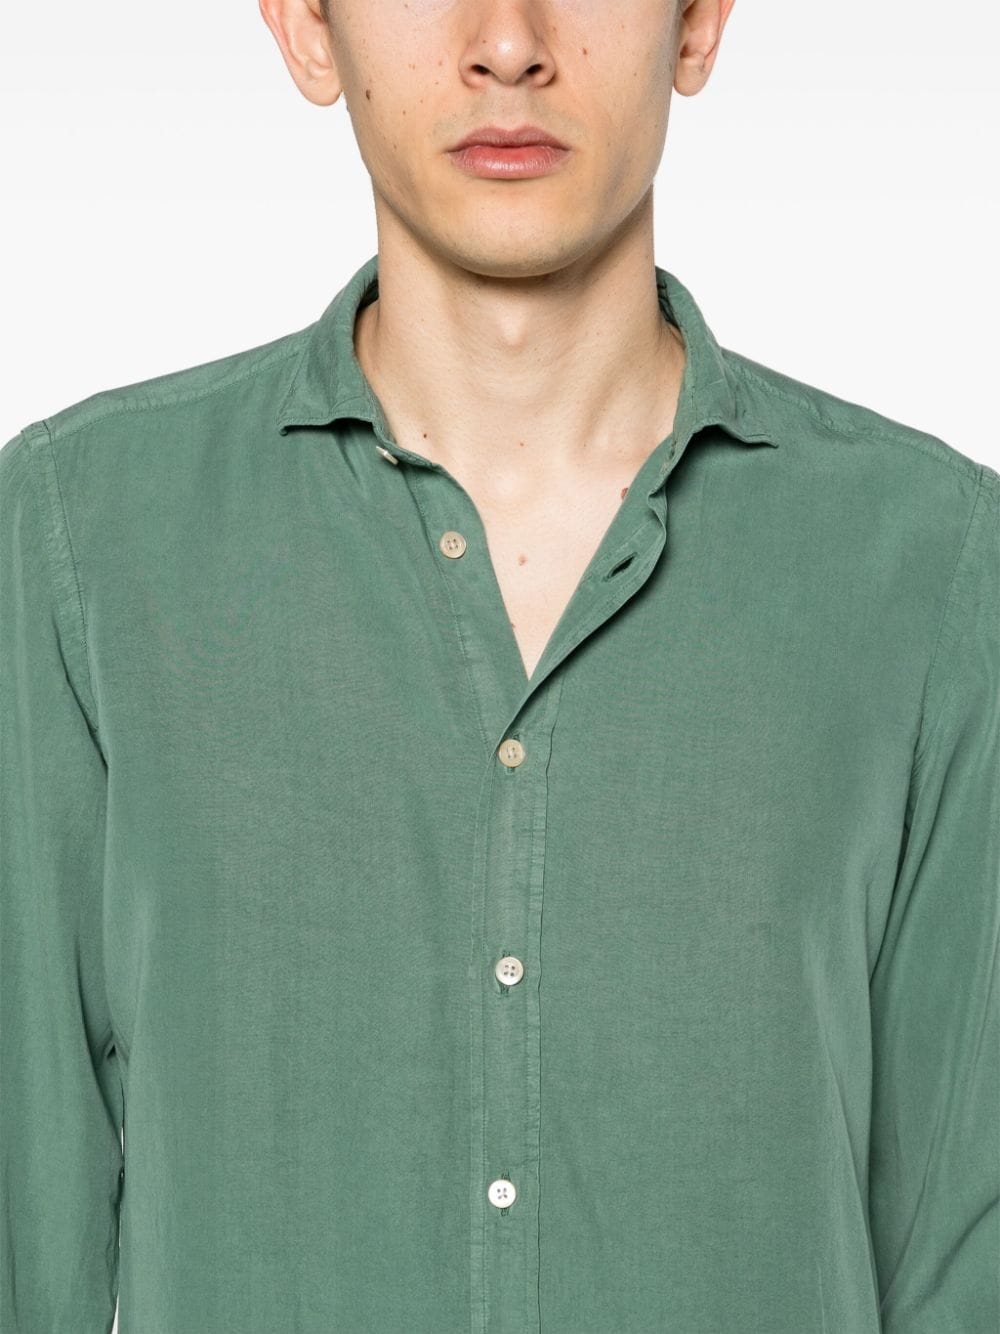 Boglioli Shirts Green